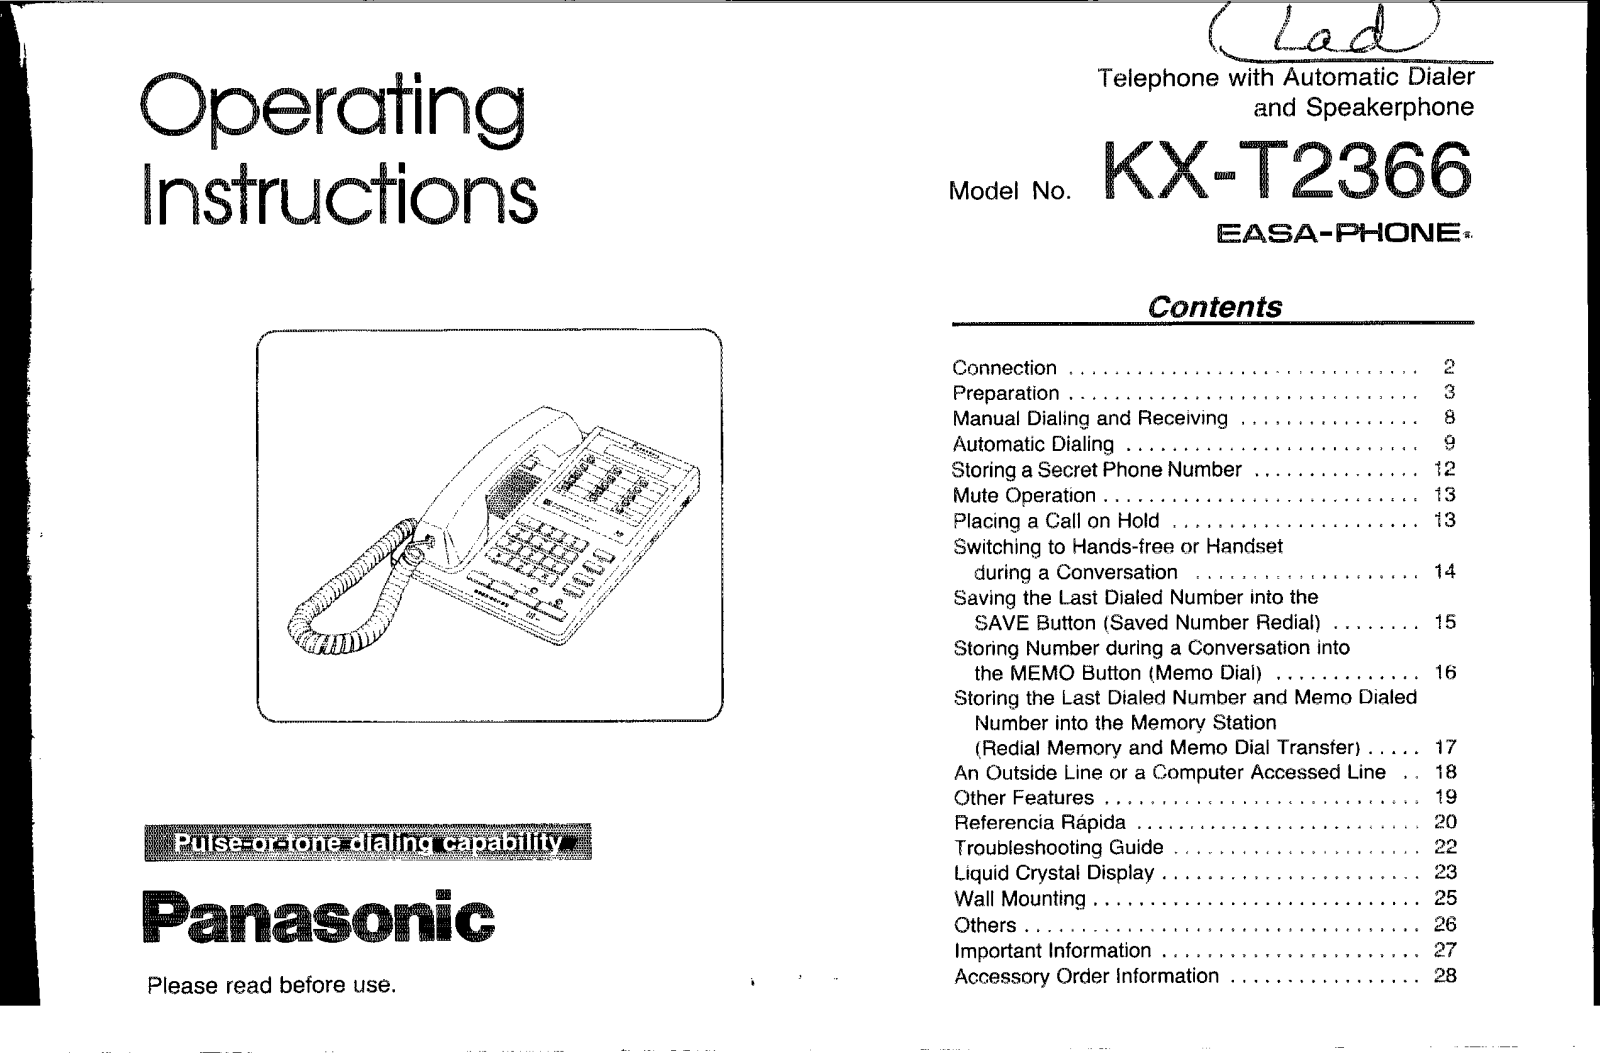 Panasonic kx-t2366 Operation Manual